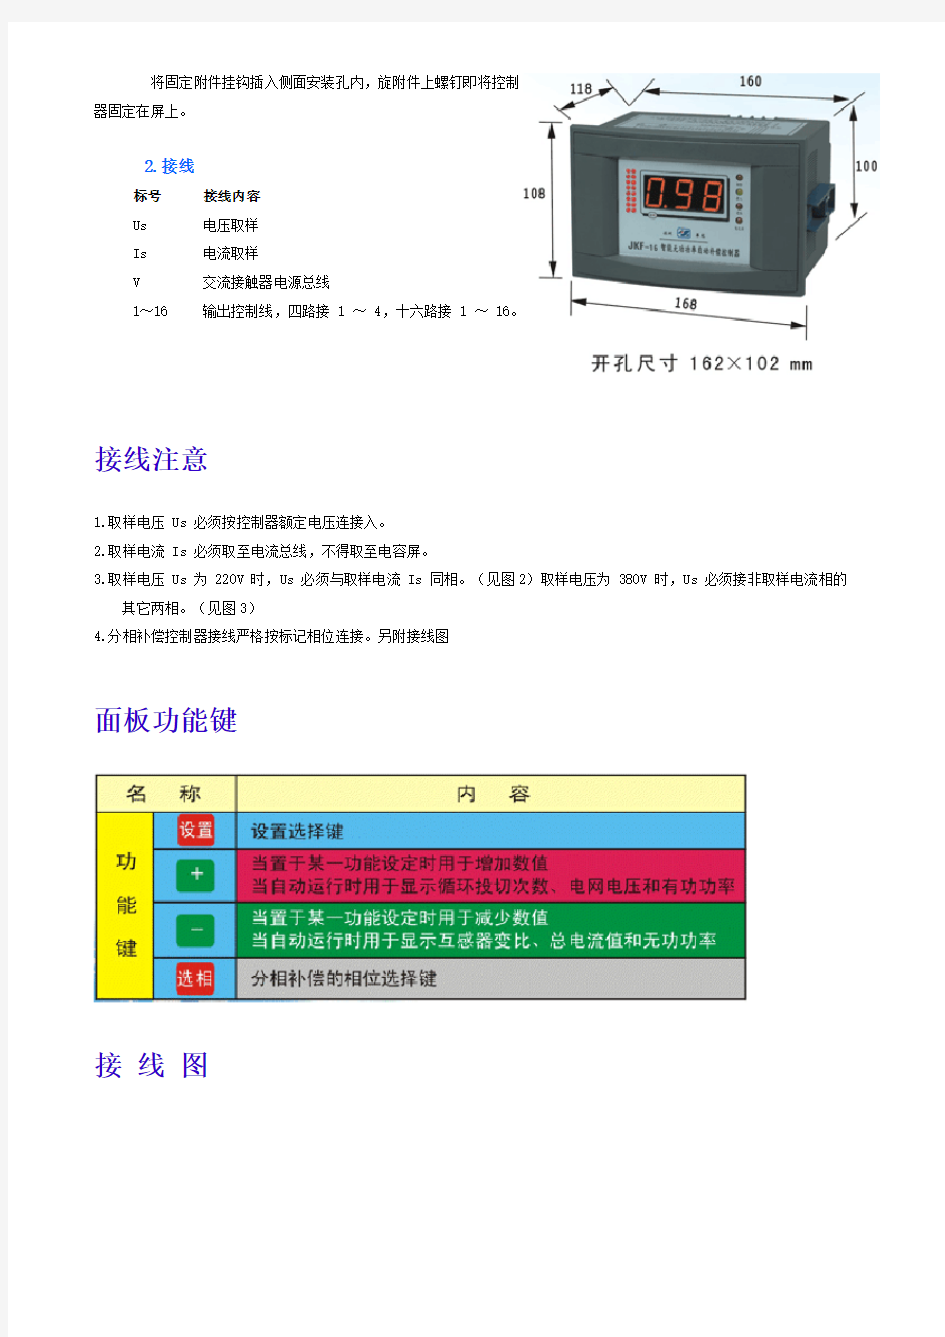 JKF 系列无功功率自动补偿控制器使用说明书